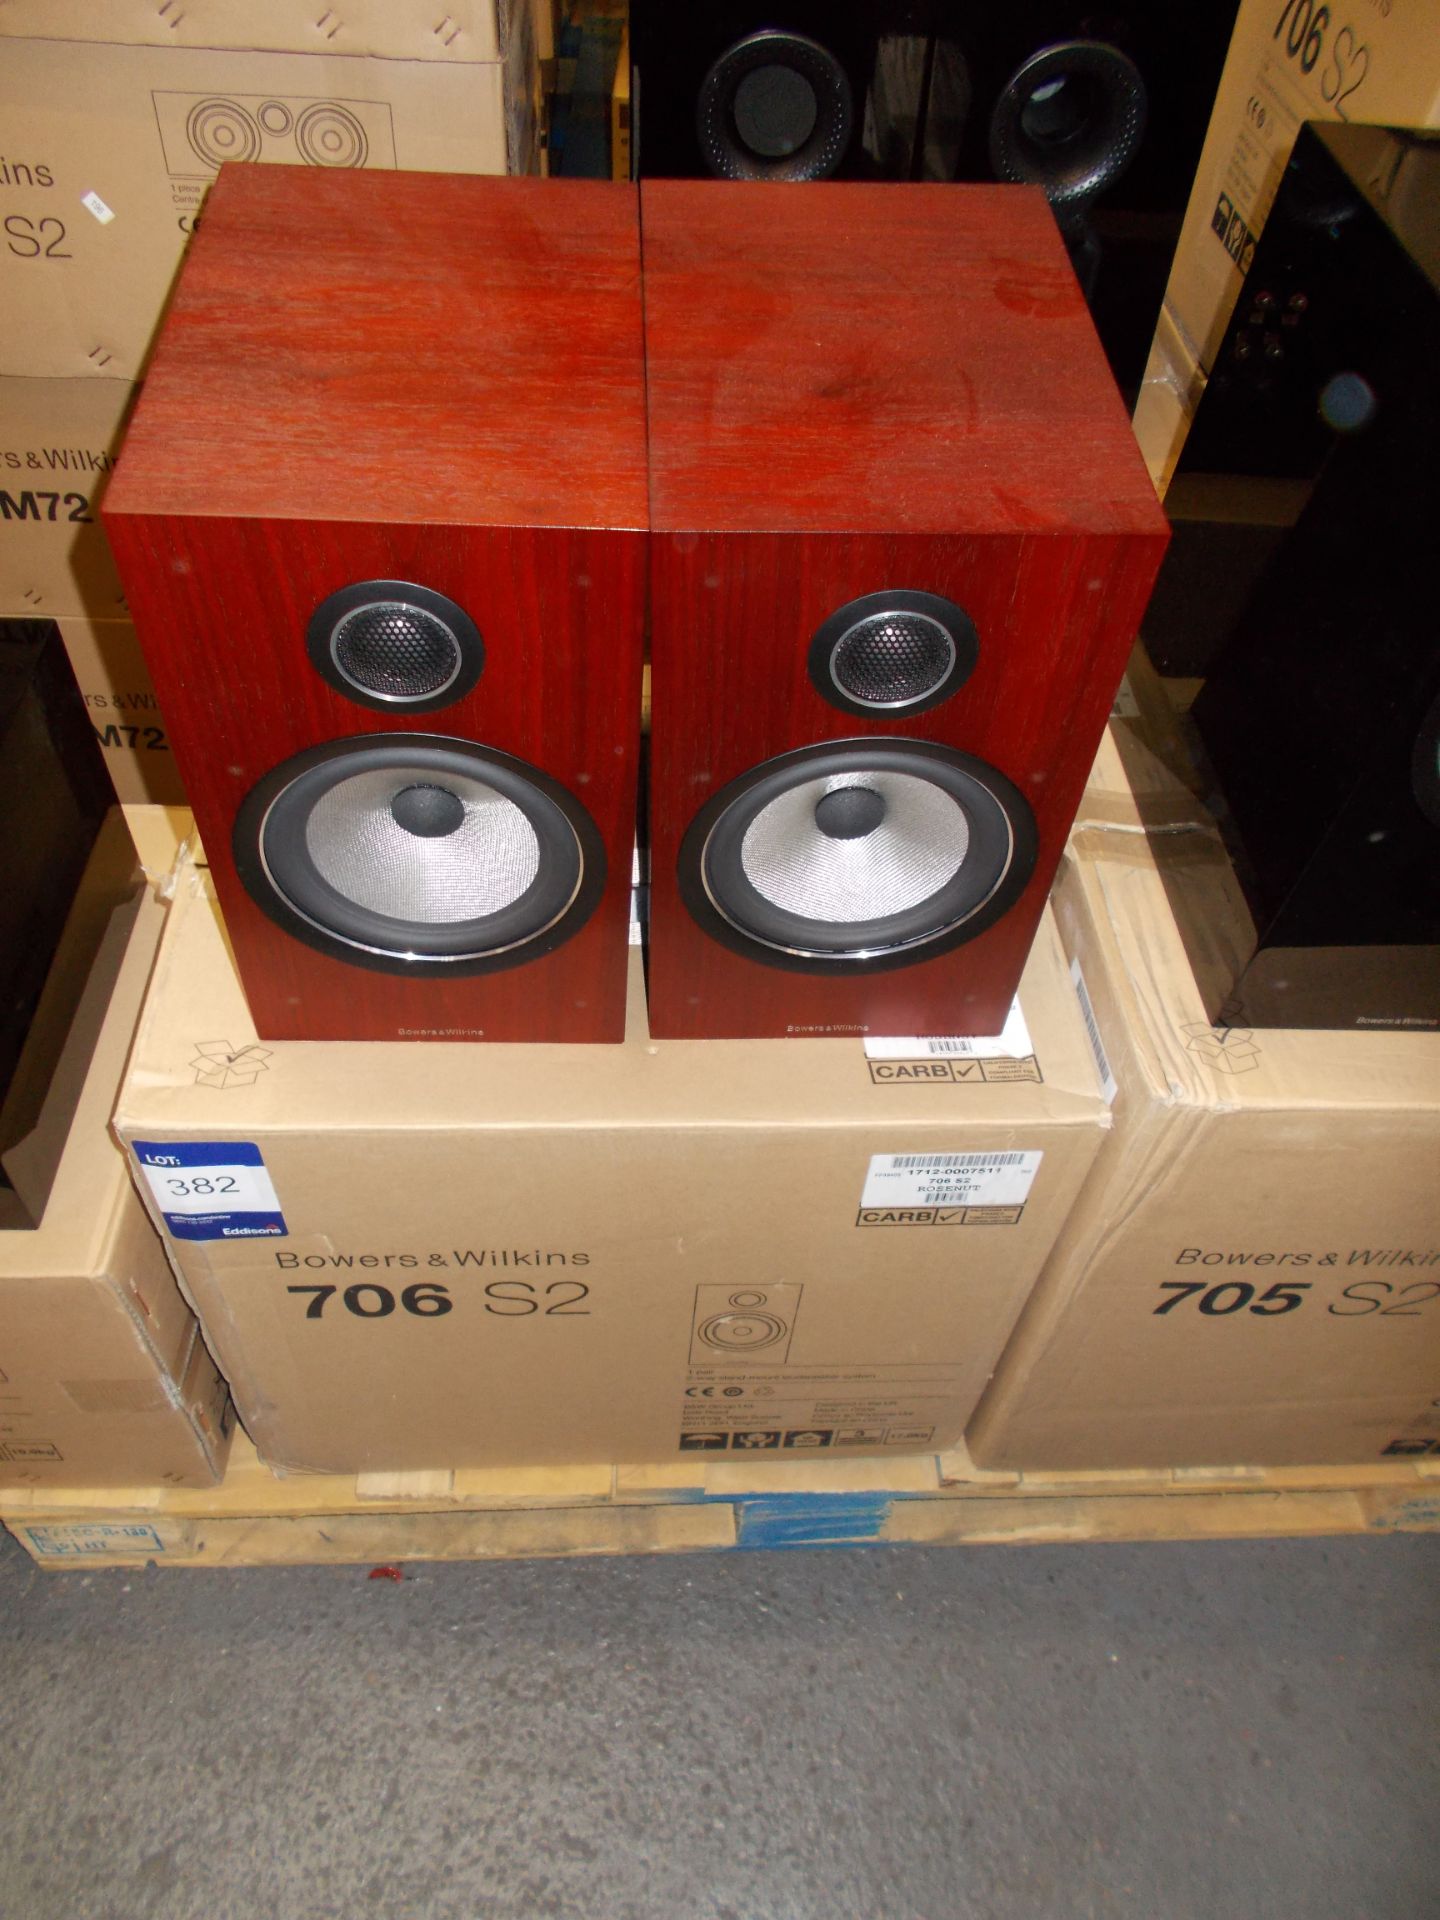 Pair of Bowers & Wilkins 706S2 Rose Nut Speakers (on display) – RRP £1099